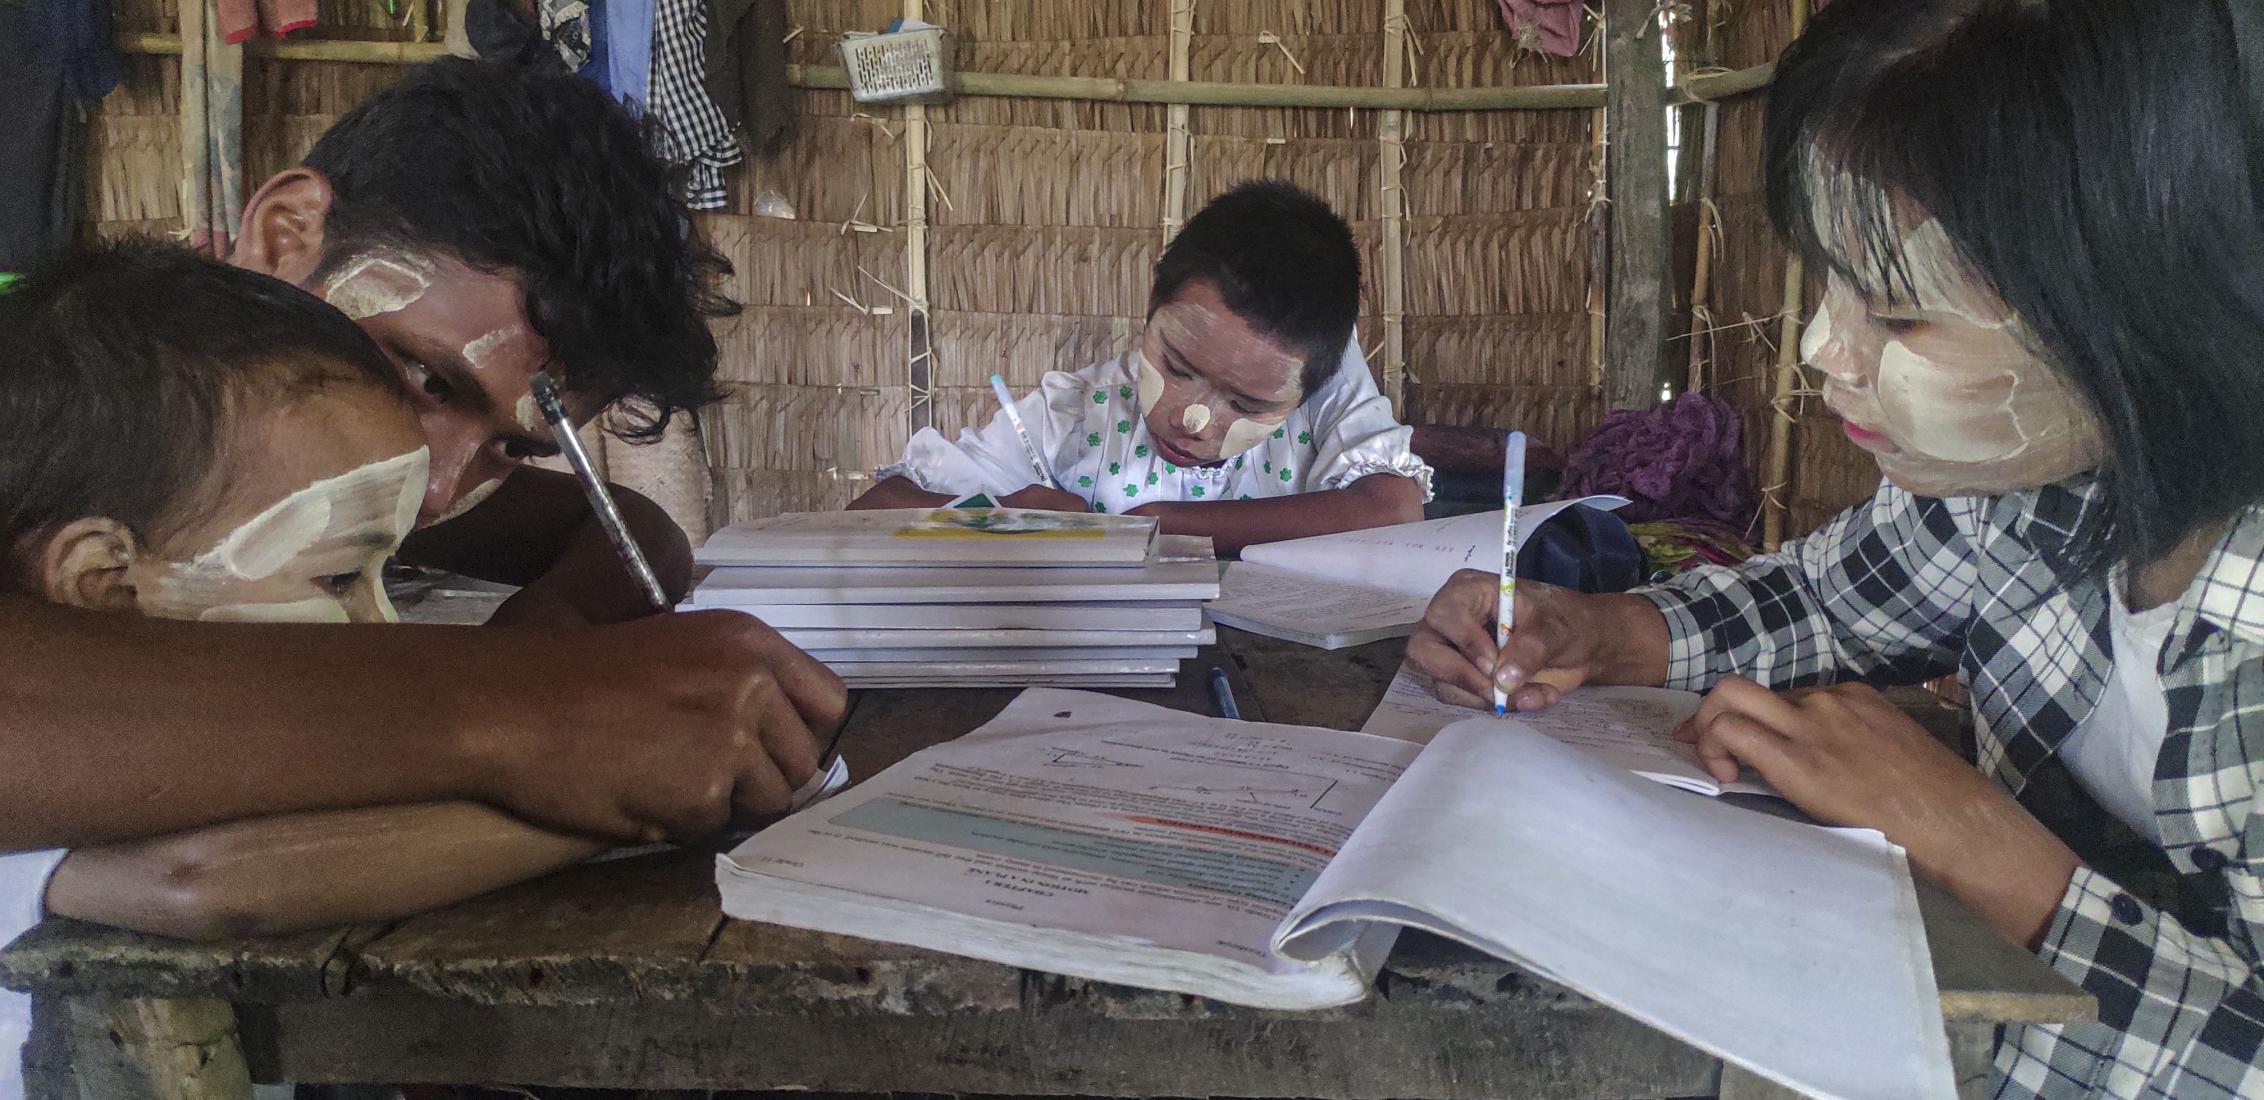 ©World Vision International  في ميانمار المتضررة من النزاع، ترك ميو المدرسة للعمل في مزرعة لإعالة أسرته. كان يعمل في المزرعة لساعات طويلة، ويحمل أحمالًا ثقيلة بشكل خطير، دون أي فرص للتعلم أو وقت فراغ. أصبحت Myo الآن جزءًا من برنامج إدارة حالات حماية الطفل التابع لمنظمة World Vision International. ومن خلال هذا الدعم الفردي الشامل، أصبح الآن يحضر برنامجًا للتدريب المهني وأصبح لديه الوقت لمساعدة شقيقاته على الدراسة..